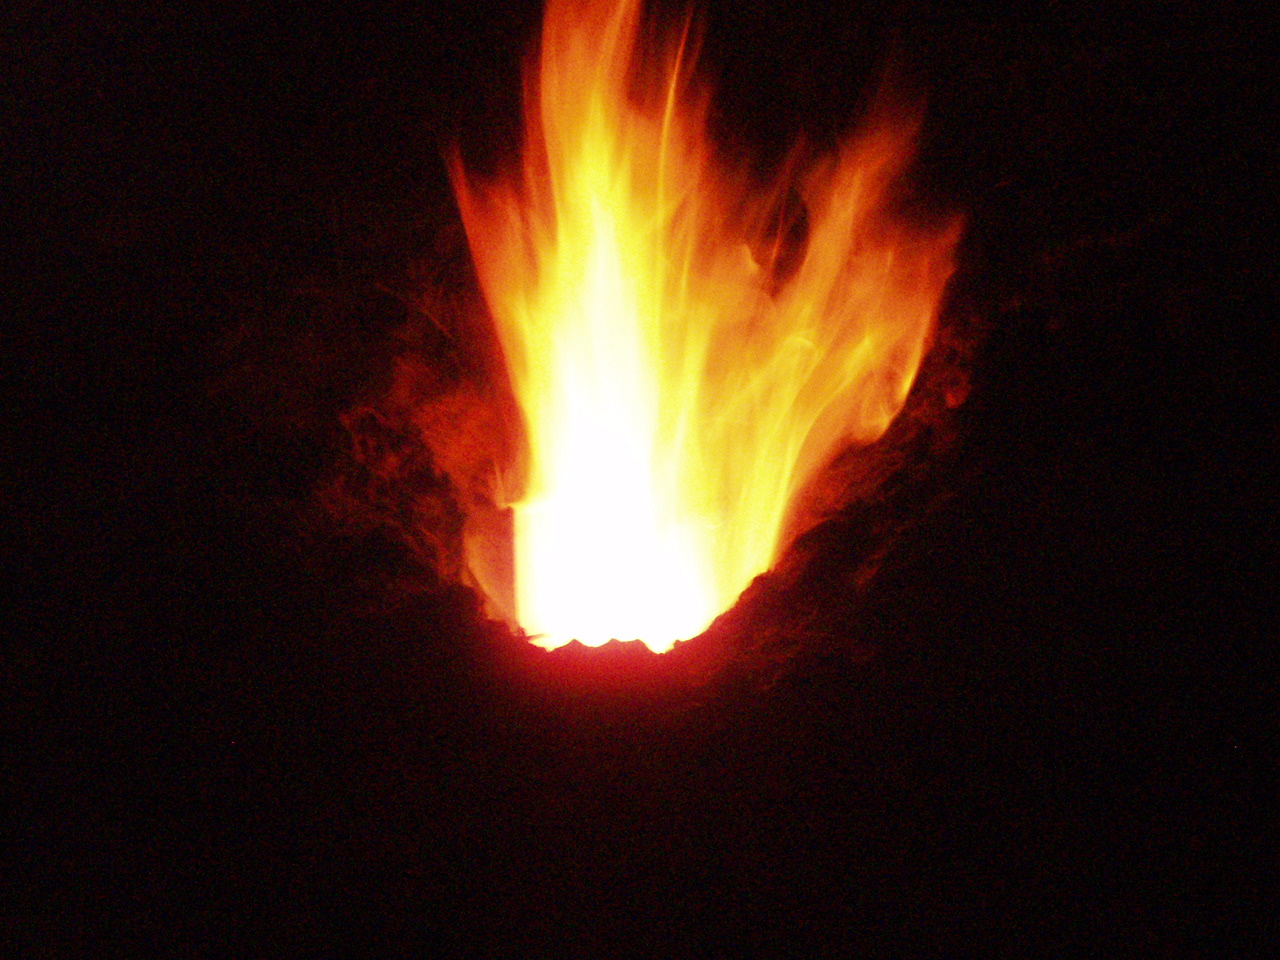 costruzioni vucano vulcani fuoco fiamme cazzate pirate azioni lapilli in giardiono